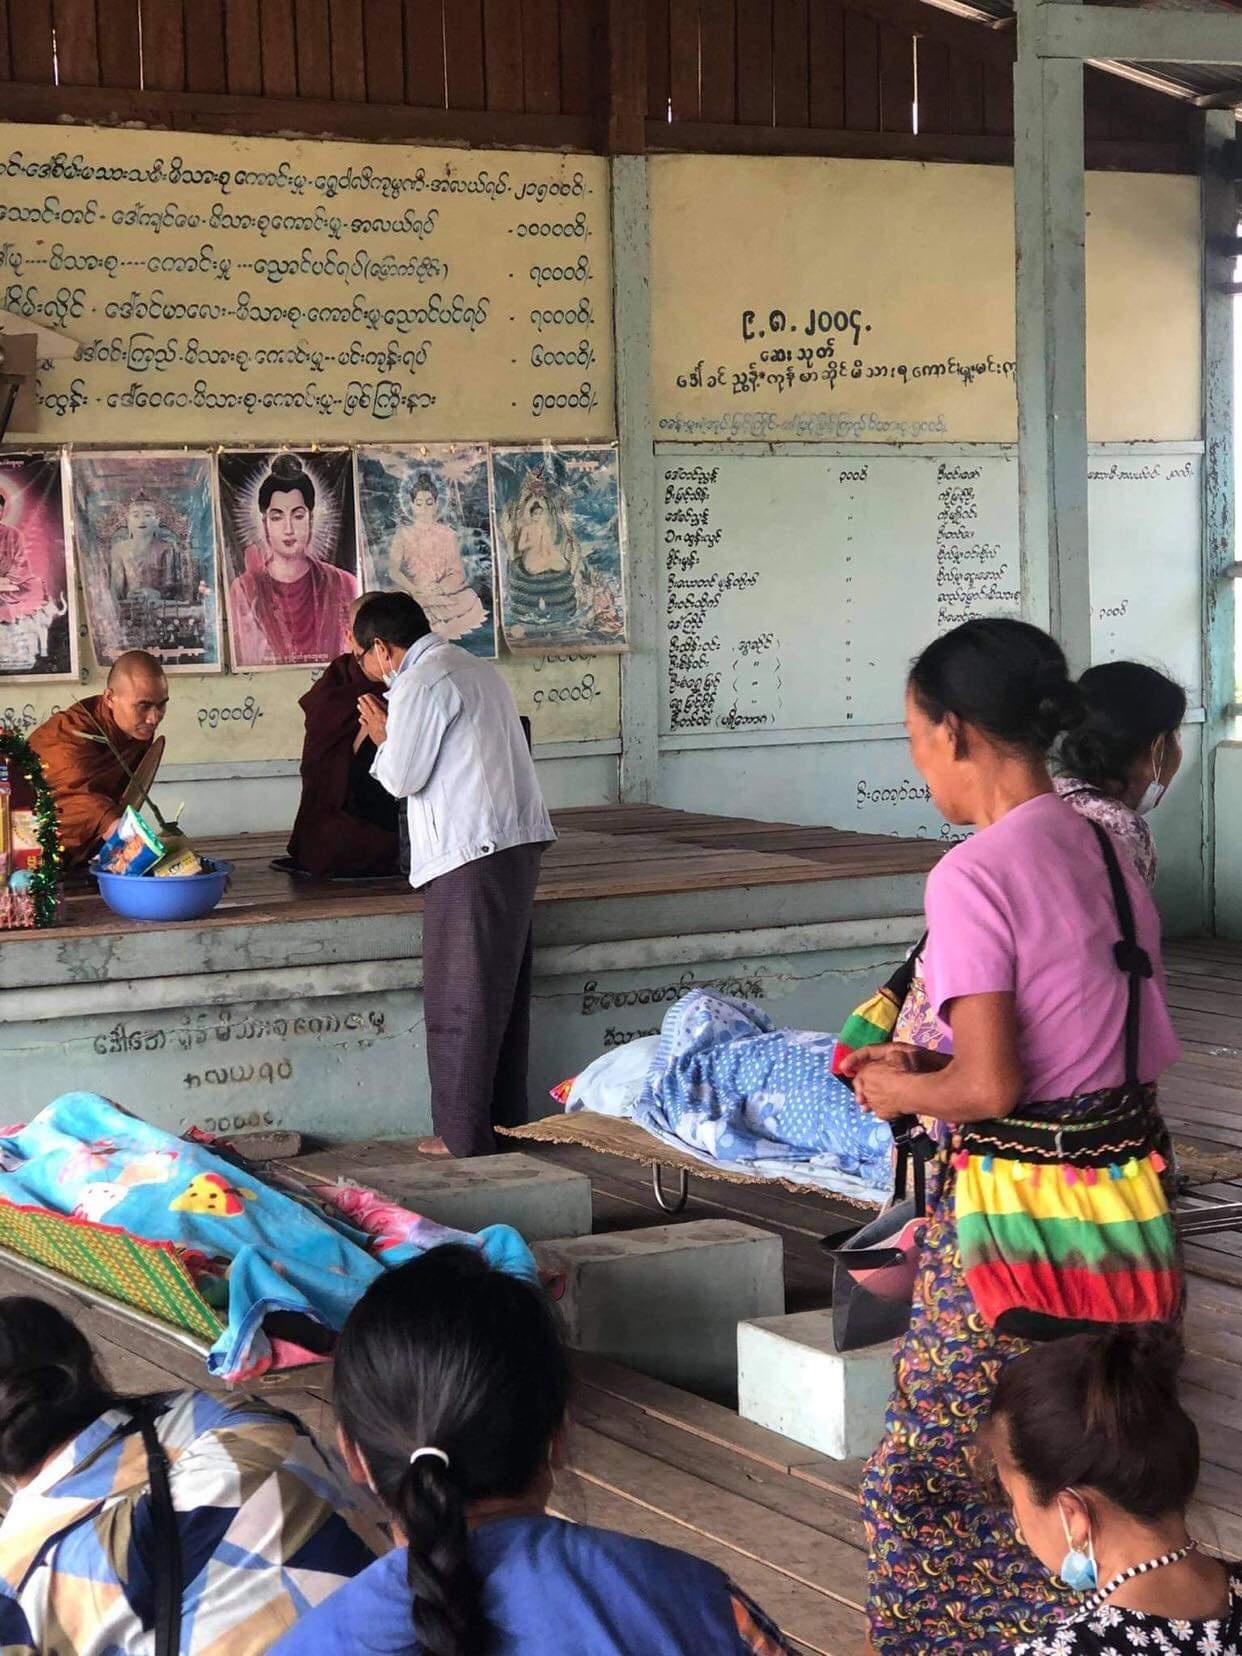 မိုးမောက်မြို့နယ် စစ်ကောင်စီတပ်မှ လက်နက်ကြီး ရမ်းသမ်းပစ်ခတ်မှုကြောင့် သေဆုံးခဲ့သူ နှစ်ဦး၏ ဈာပန